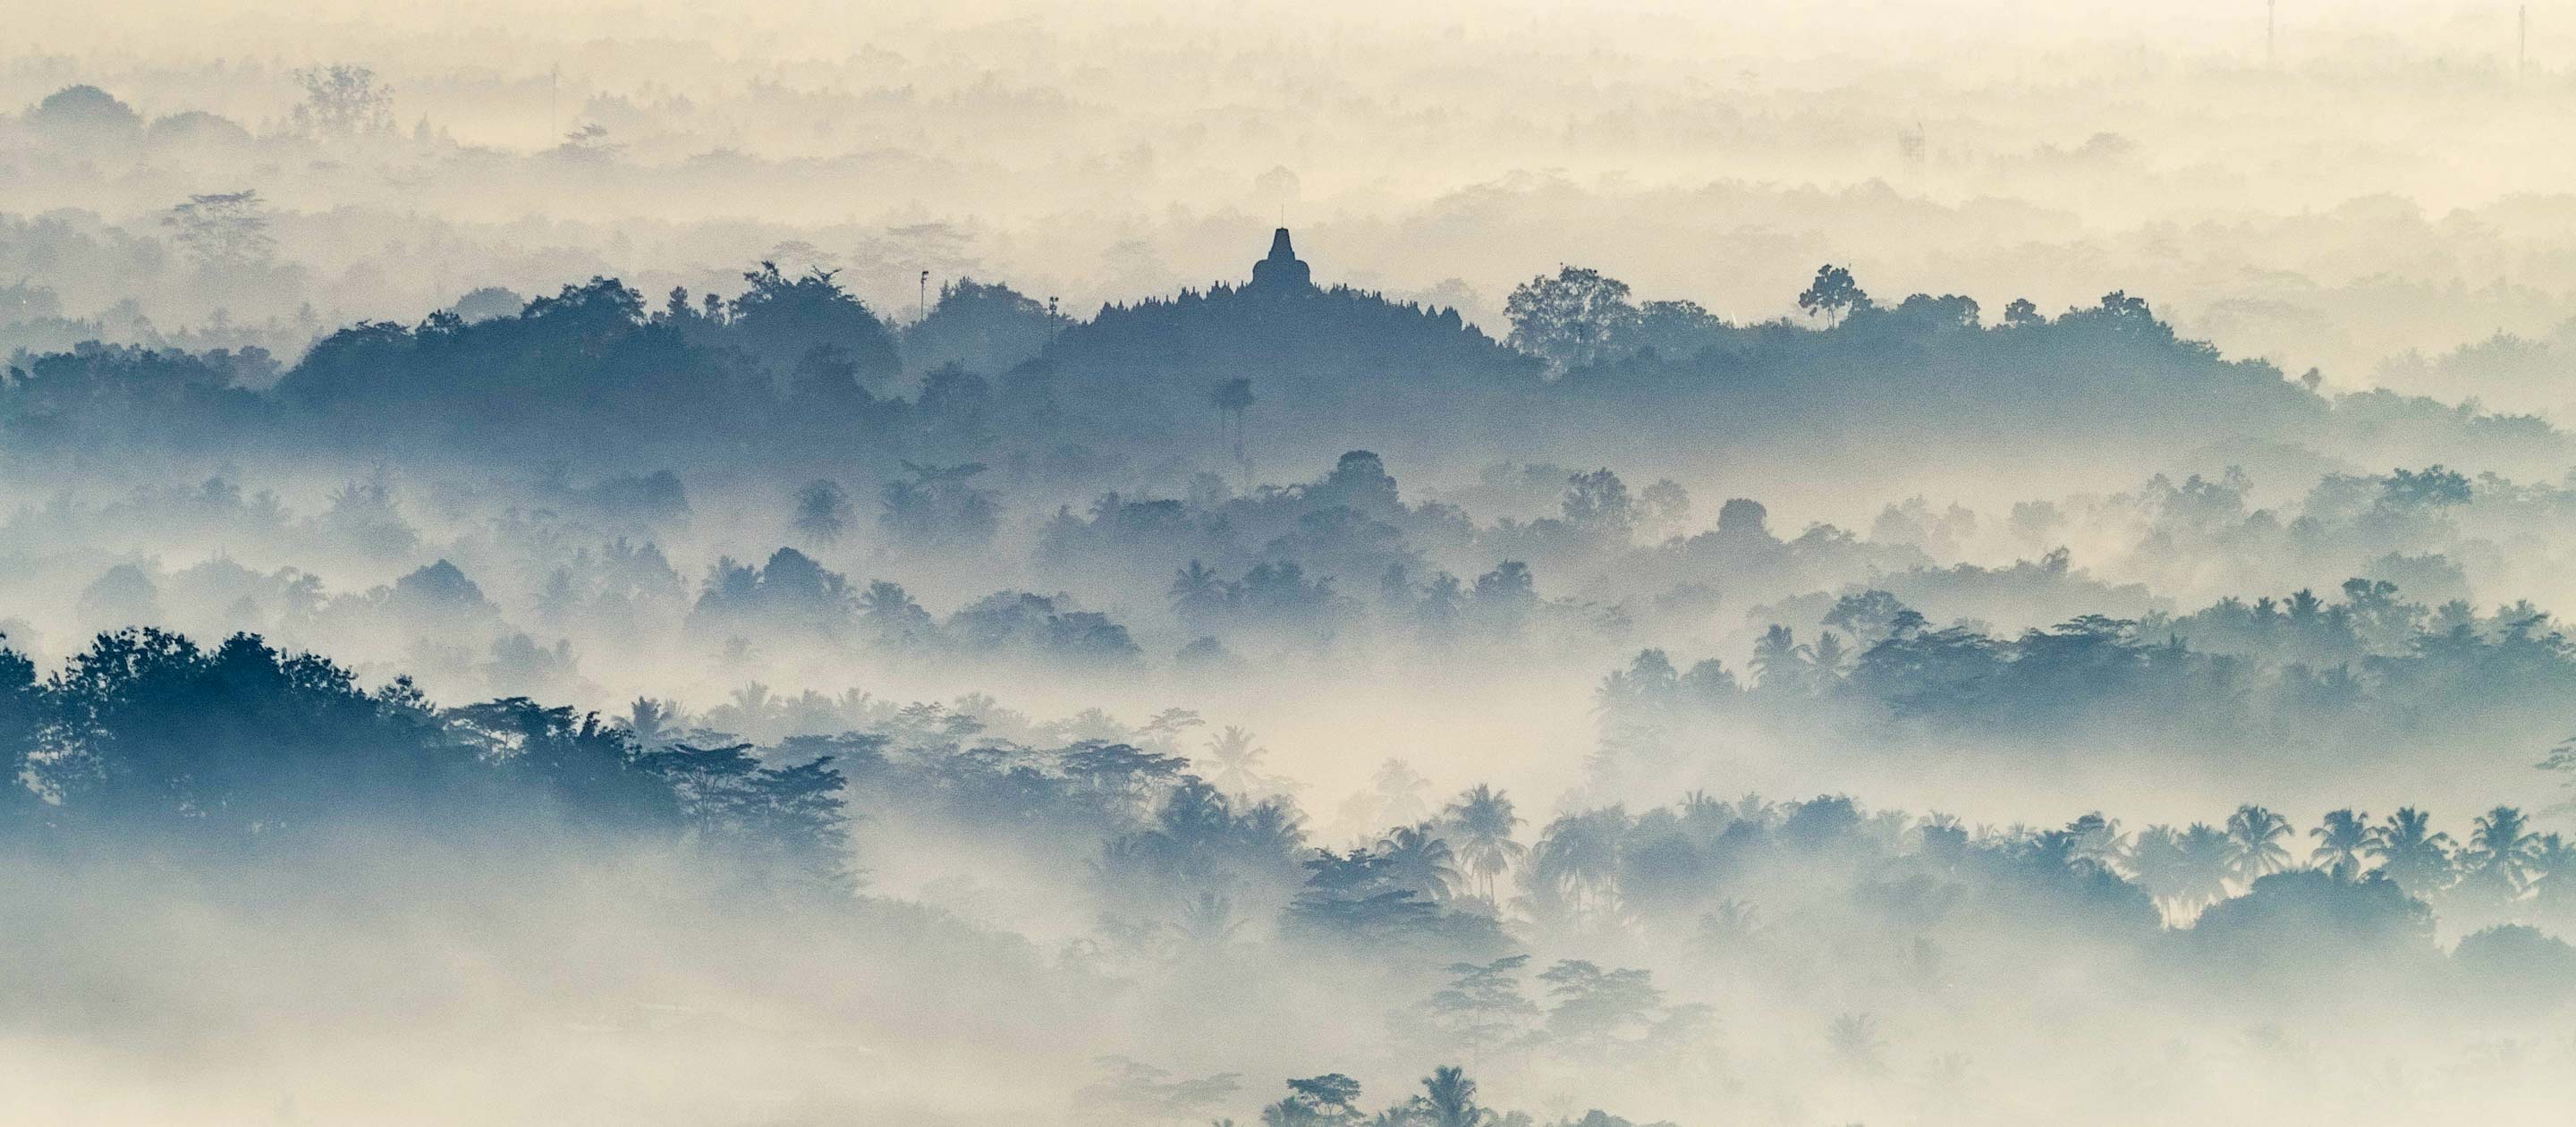 Foggy mountains of Borodubur, India